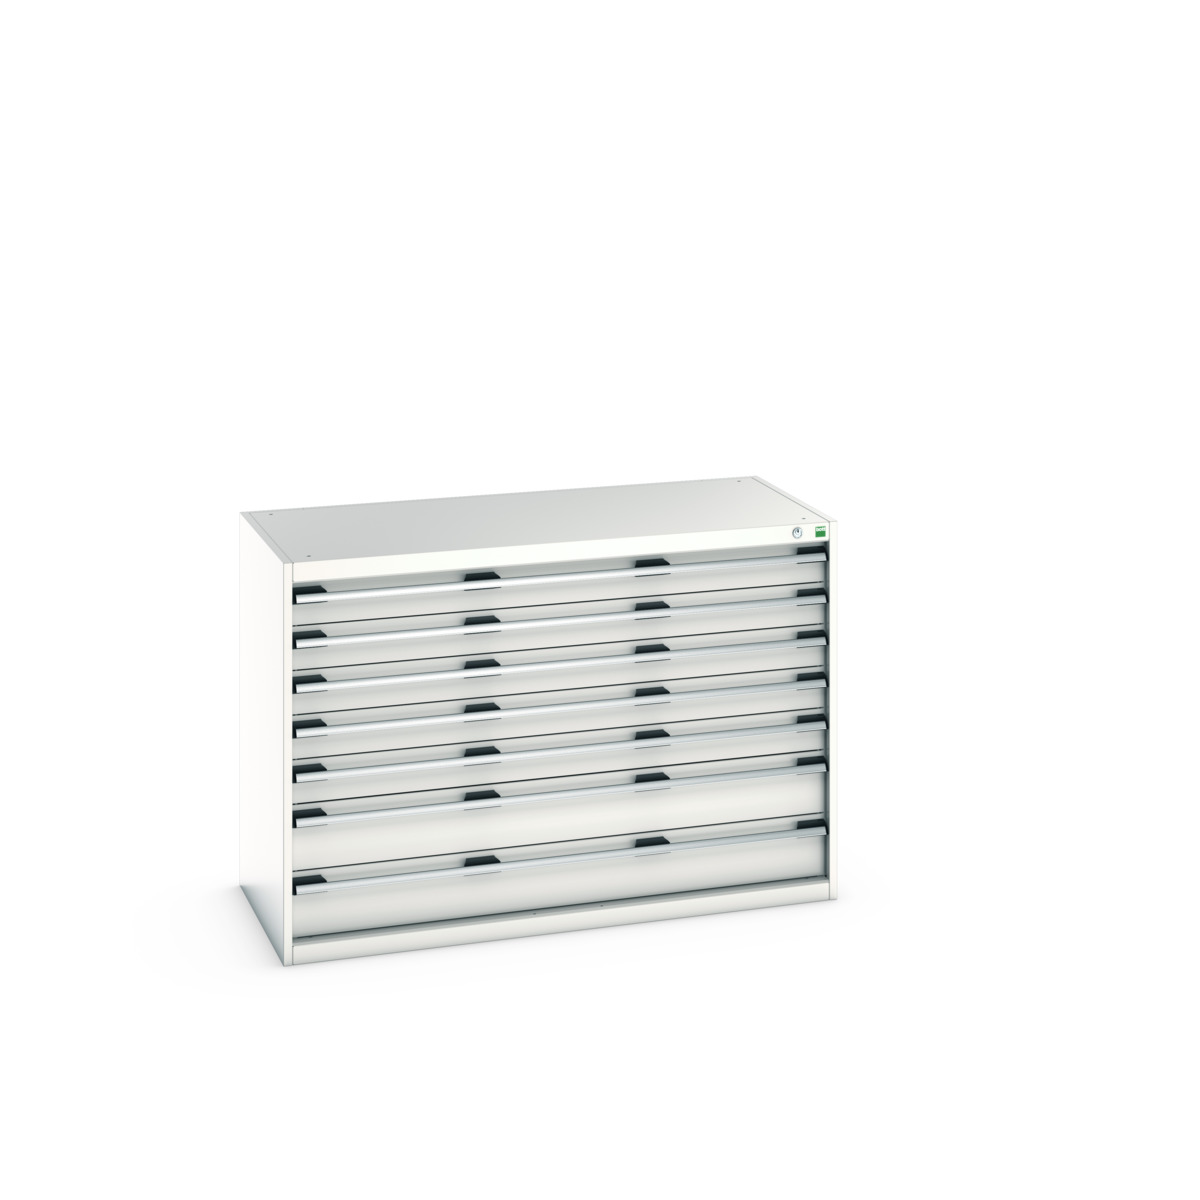 40022117.16V - cubio drawer cabinet